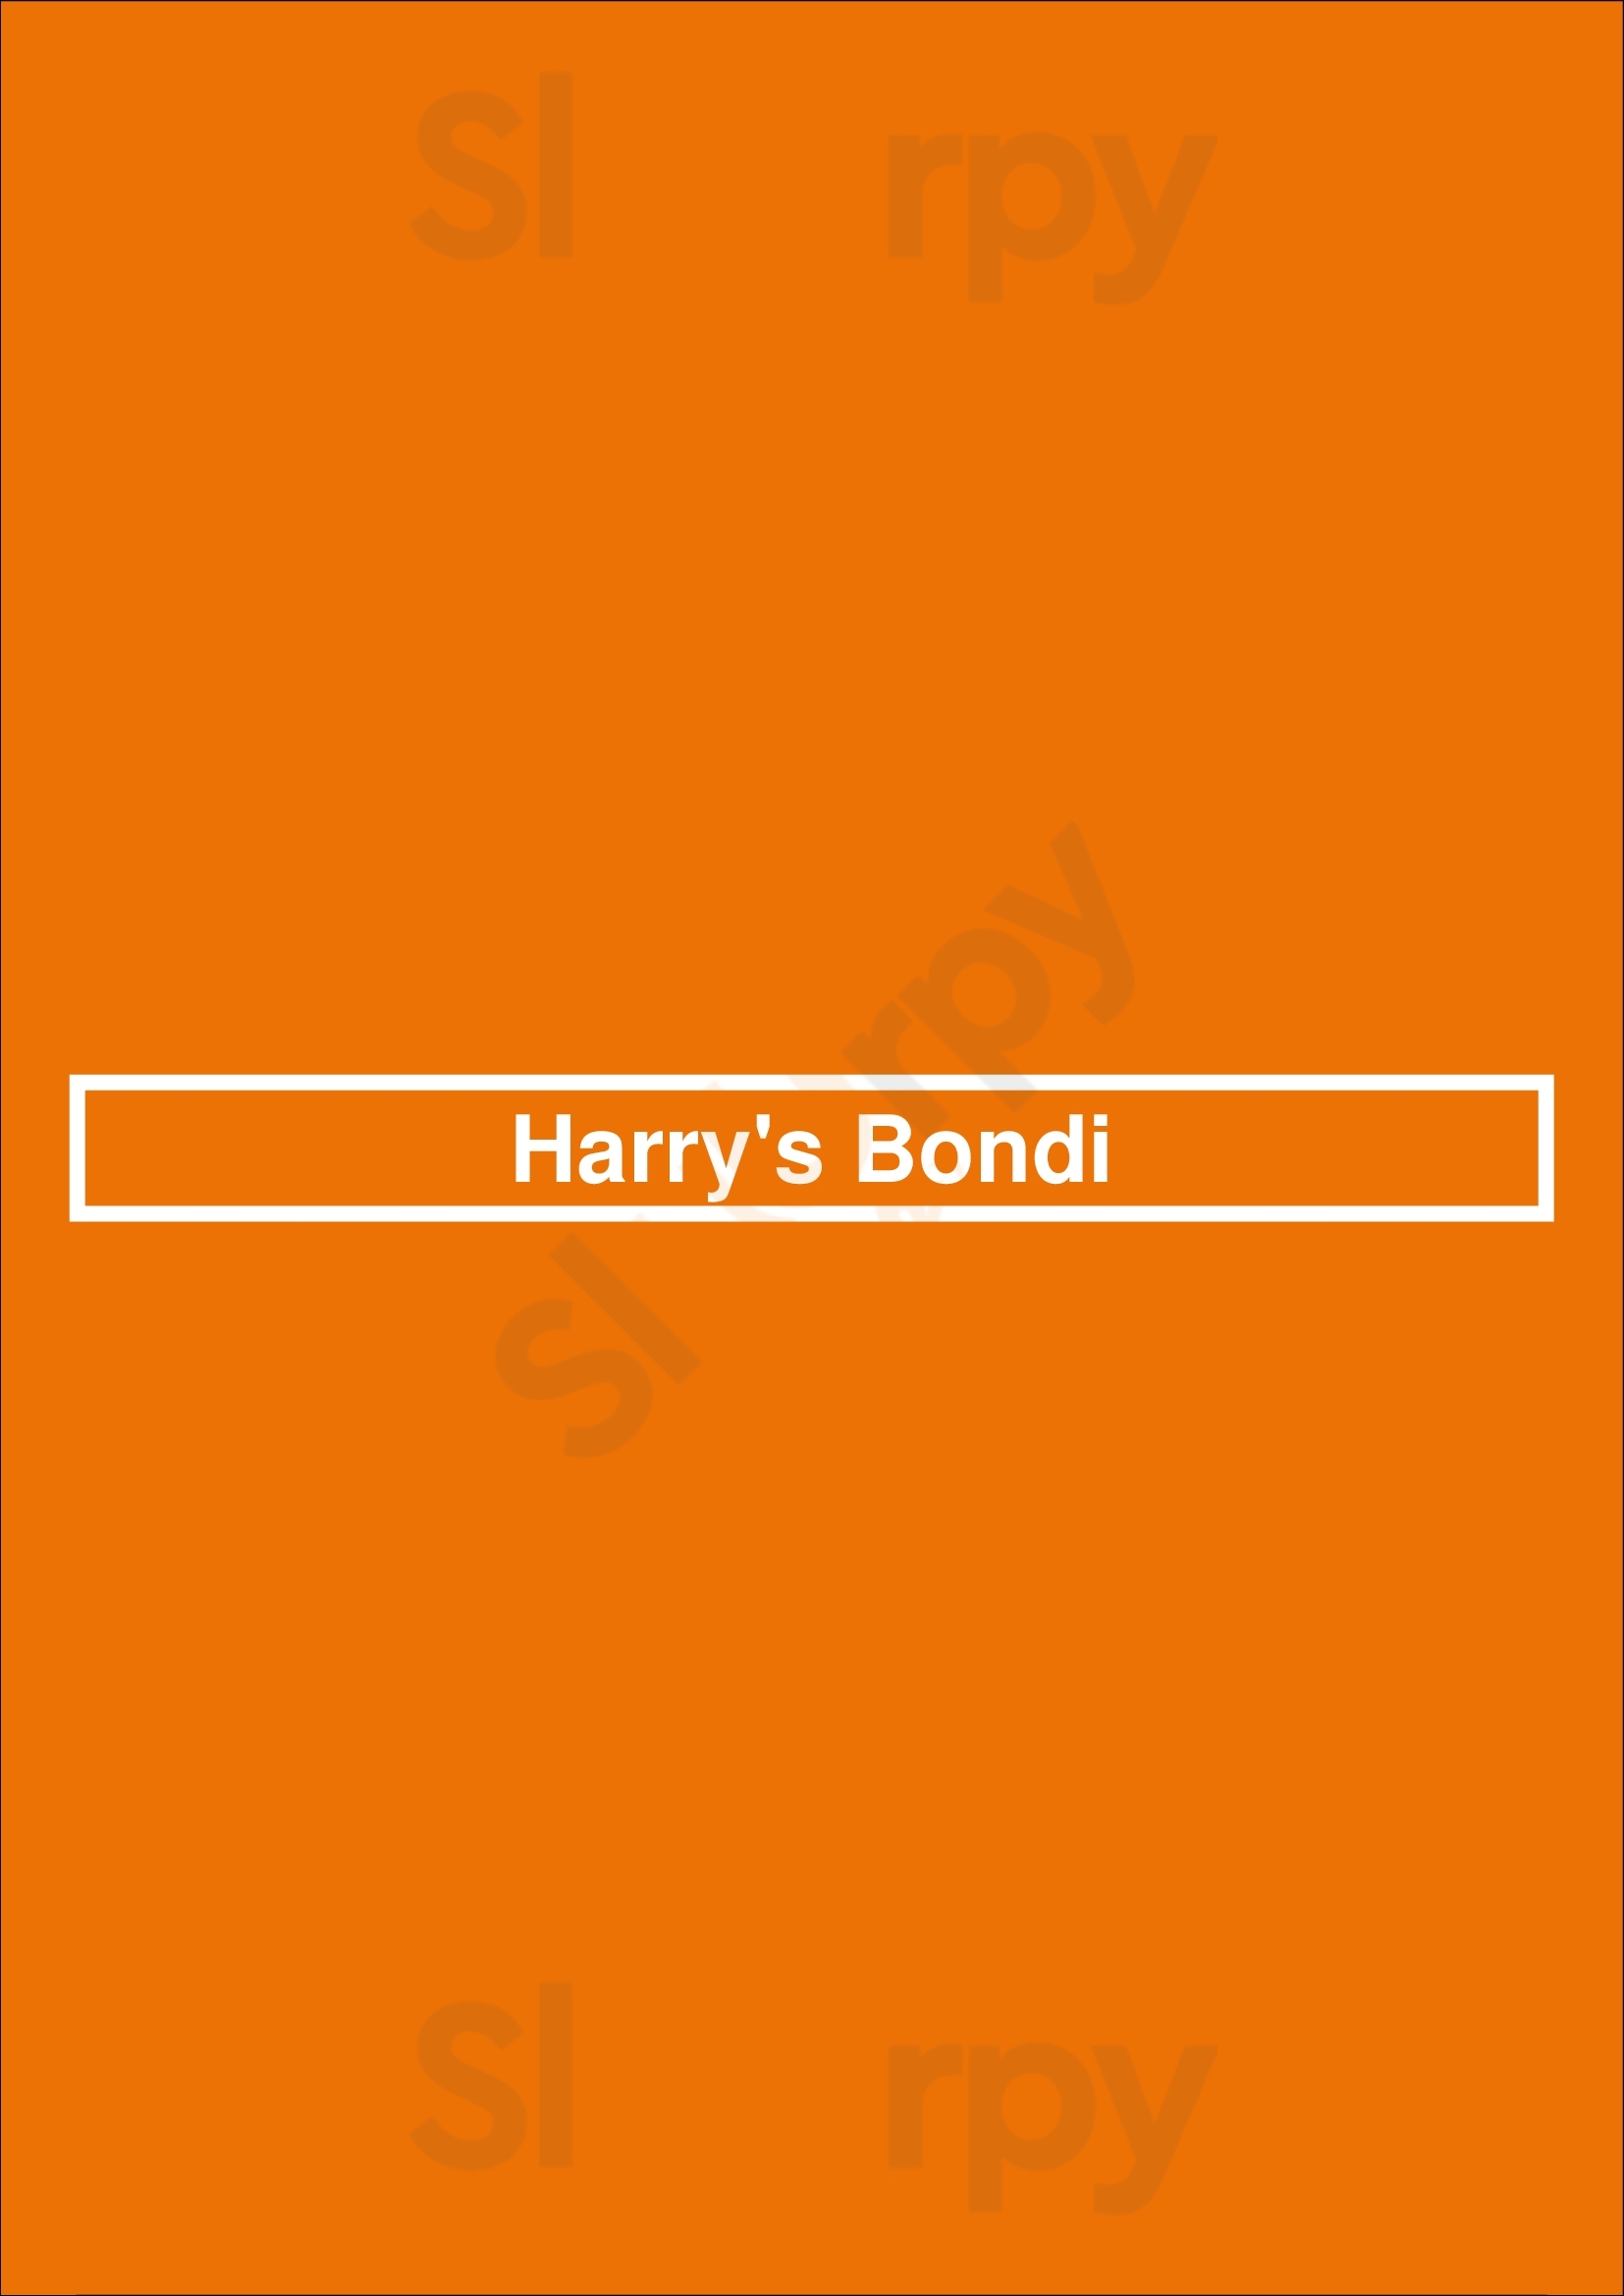 Harry's Bondi Bondi Menu - 1